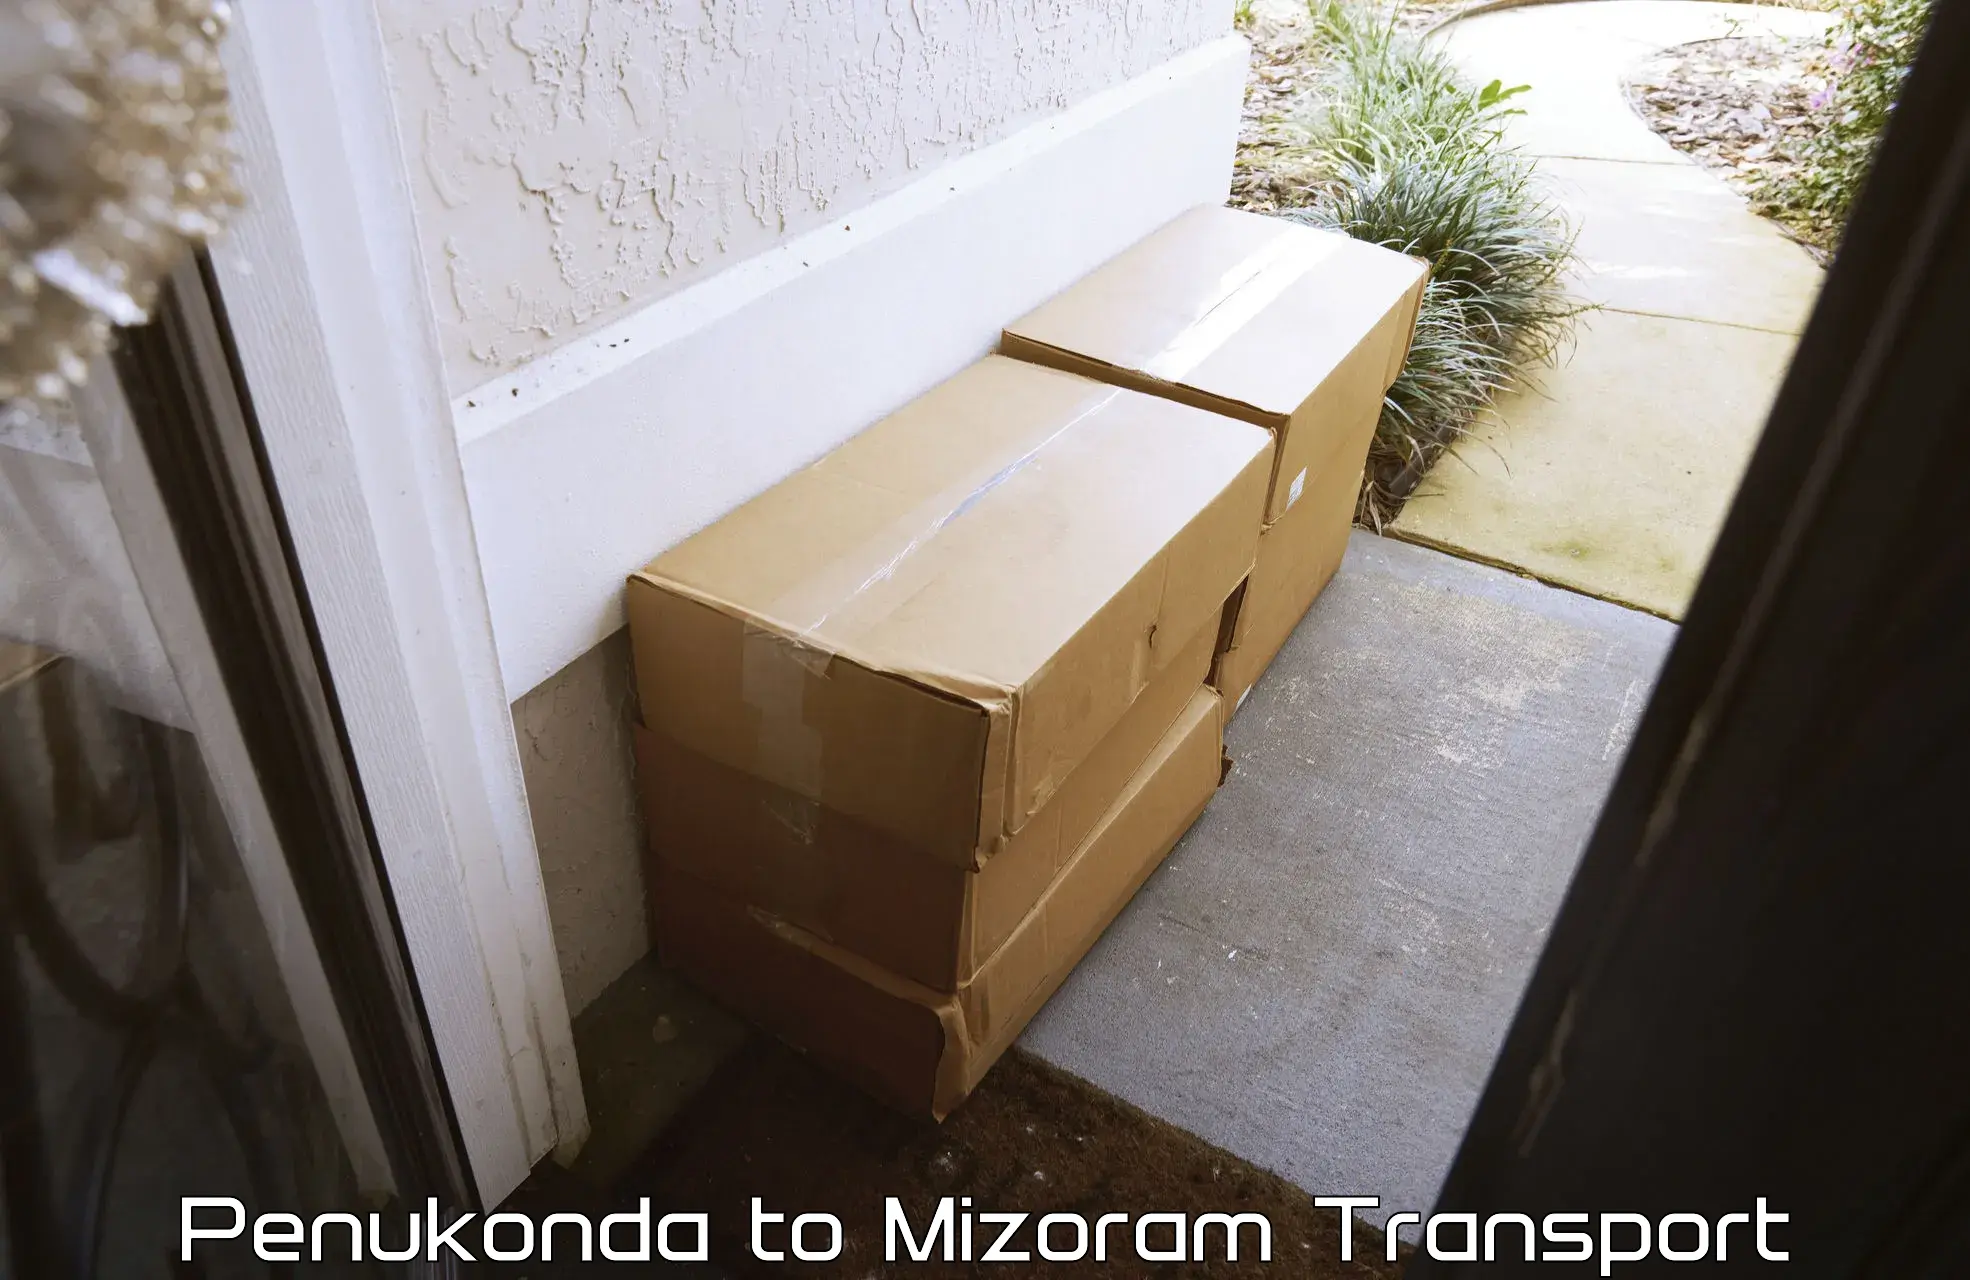 Delivery service Penukonda to Mizoram